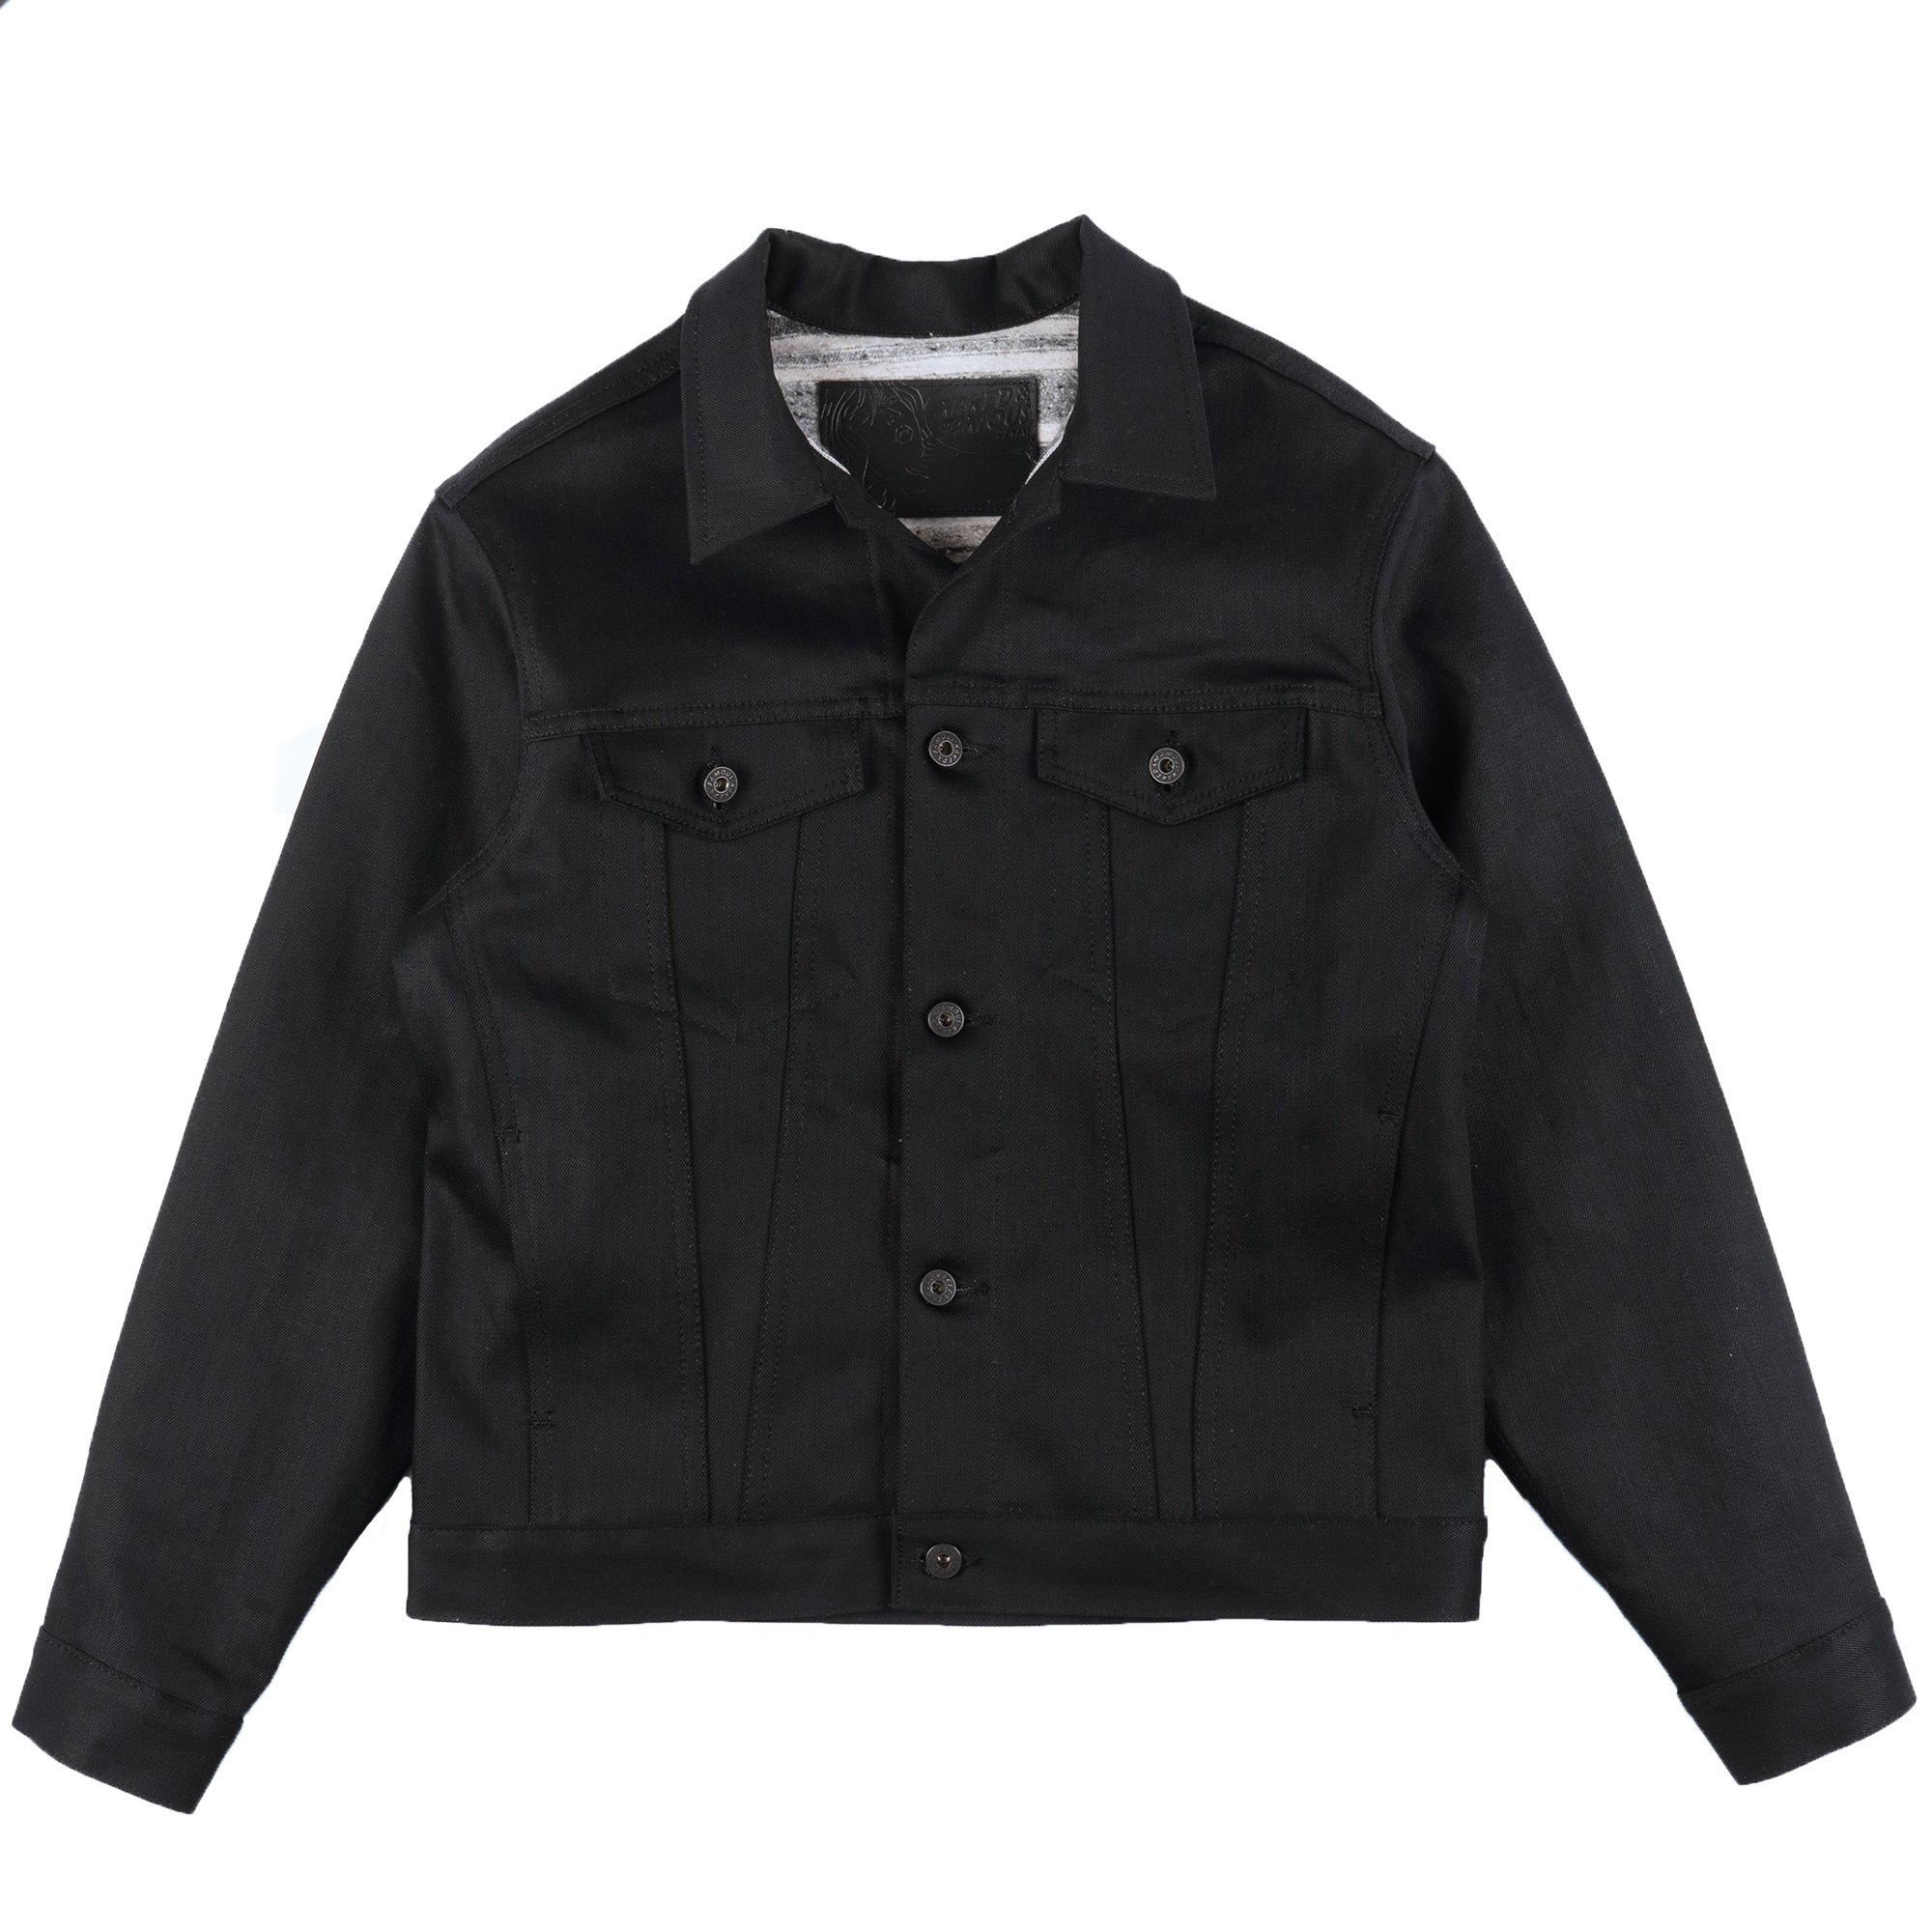  Solid Black Selvedge Lined Denim Jacket 